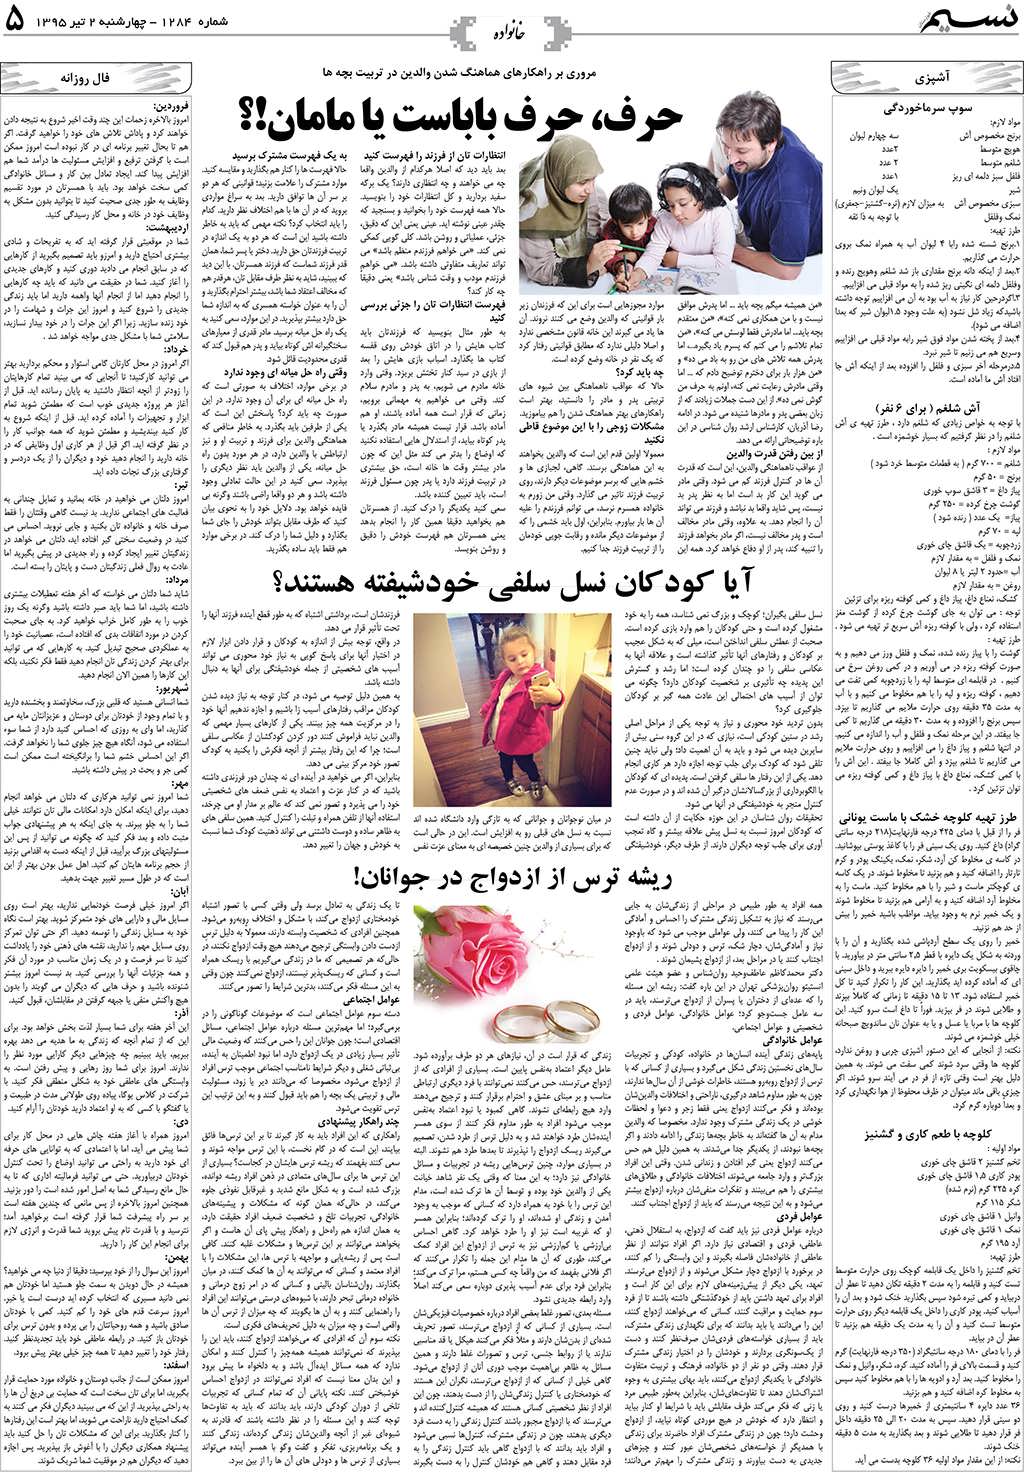 صفحه خانواده روزنامه نسیم شماره 1284